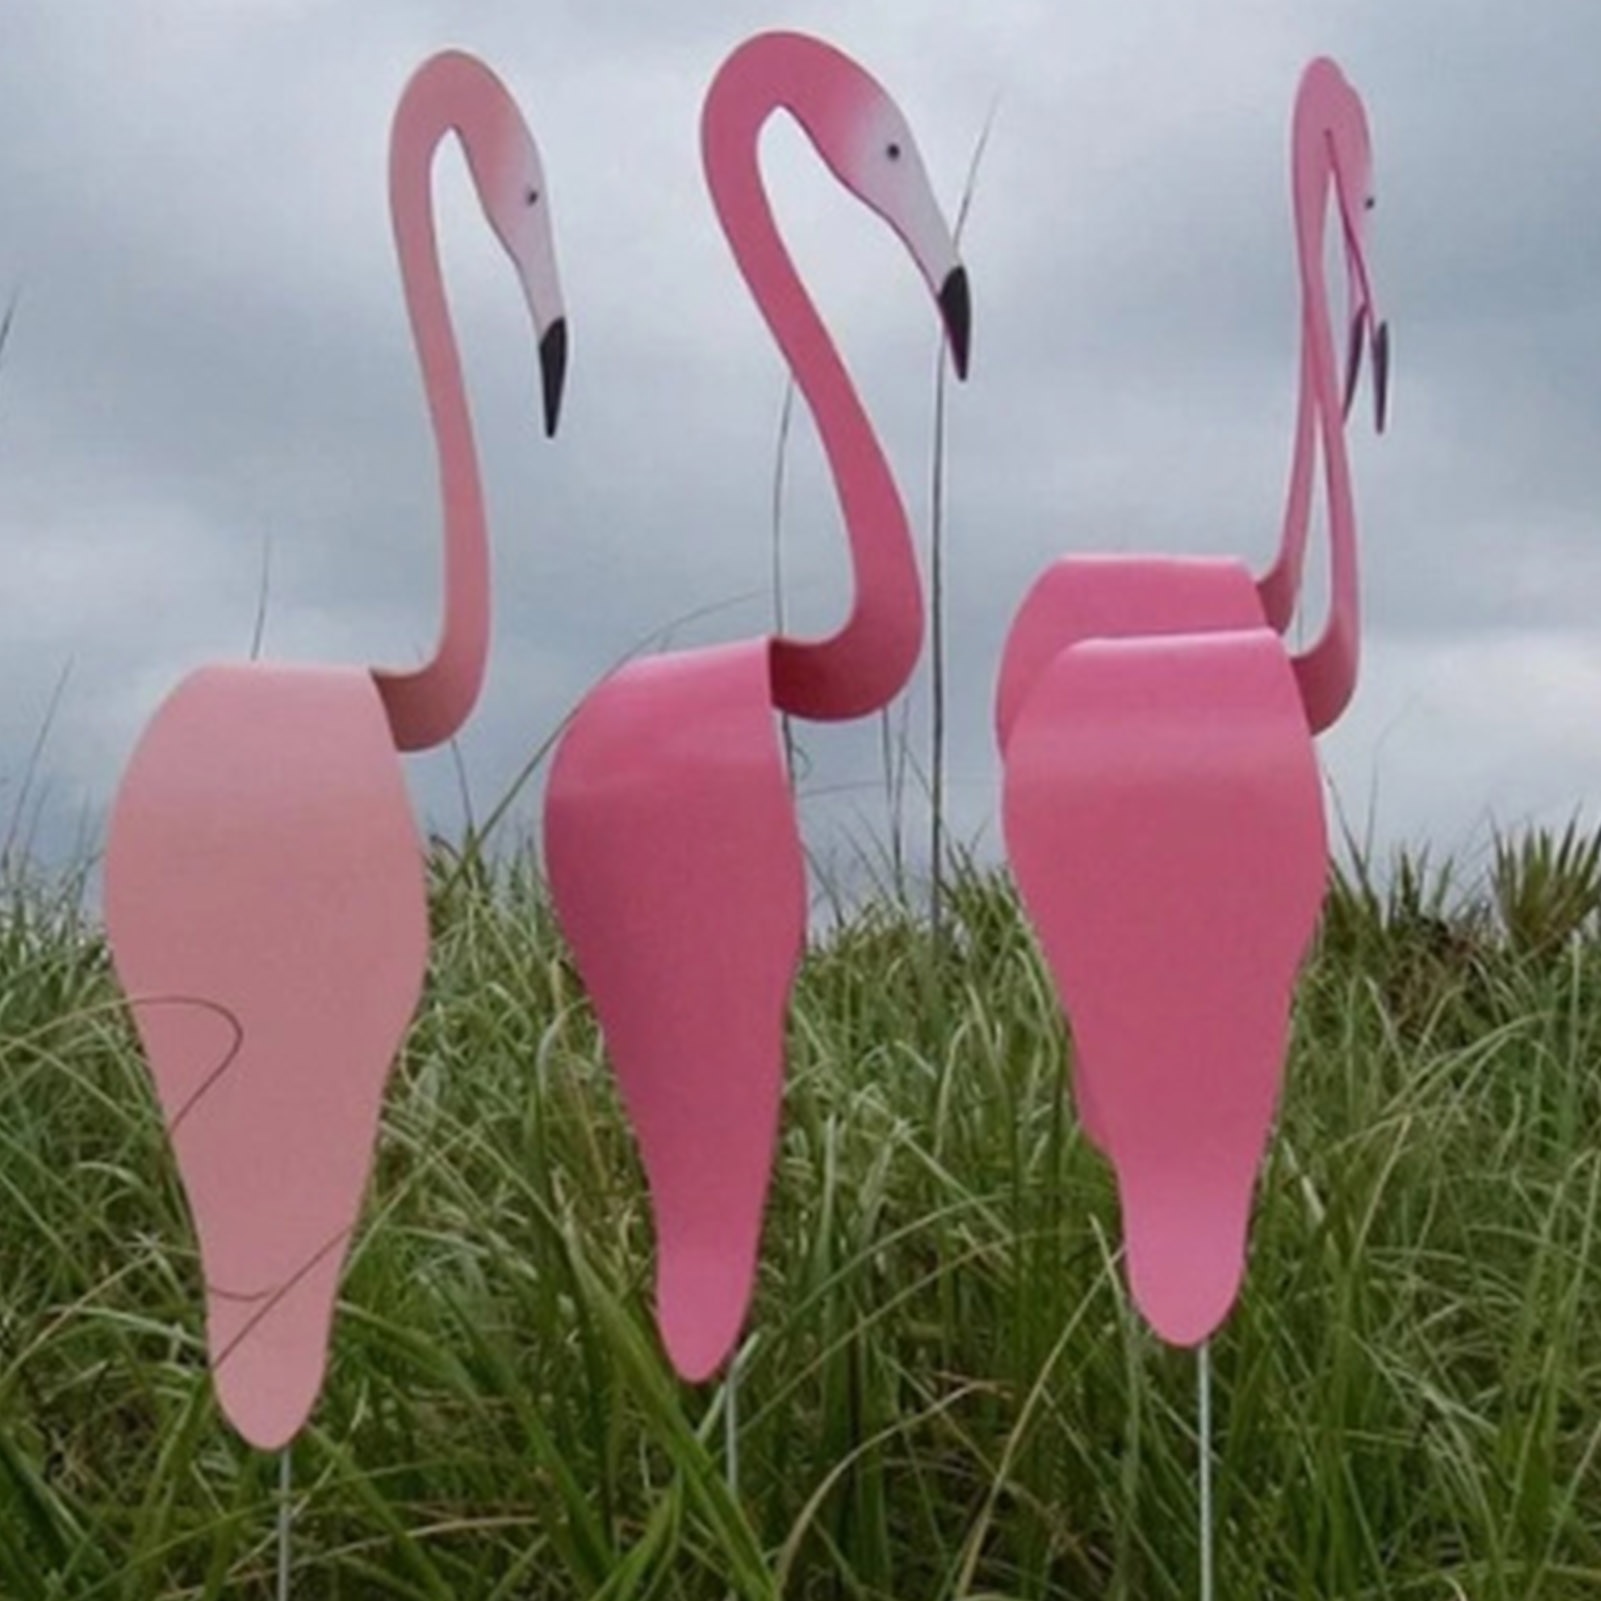 Swirl Vogels Whimsica En Unieke Dynamische Vogels Draait Met De Lichte Wind Flamingo Spinner Voor Yard Tuin Home Decoratie